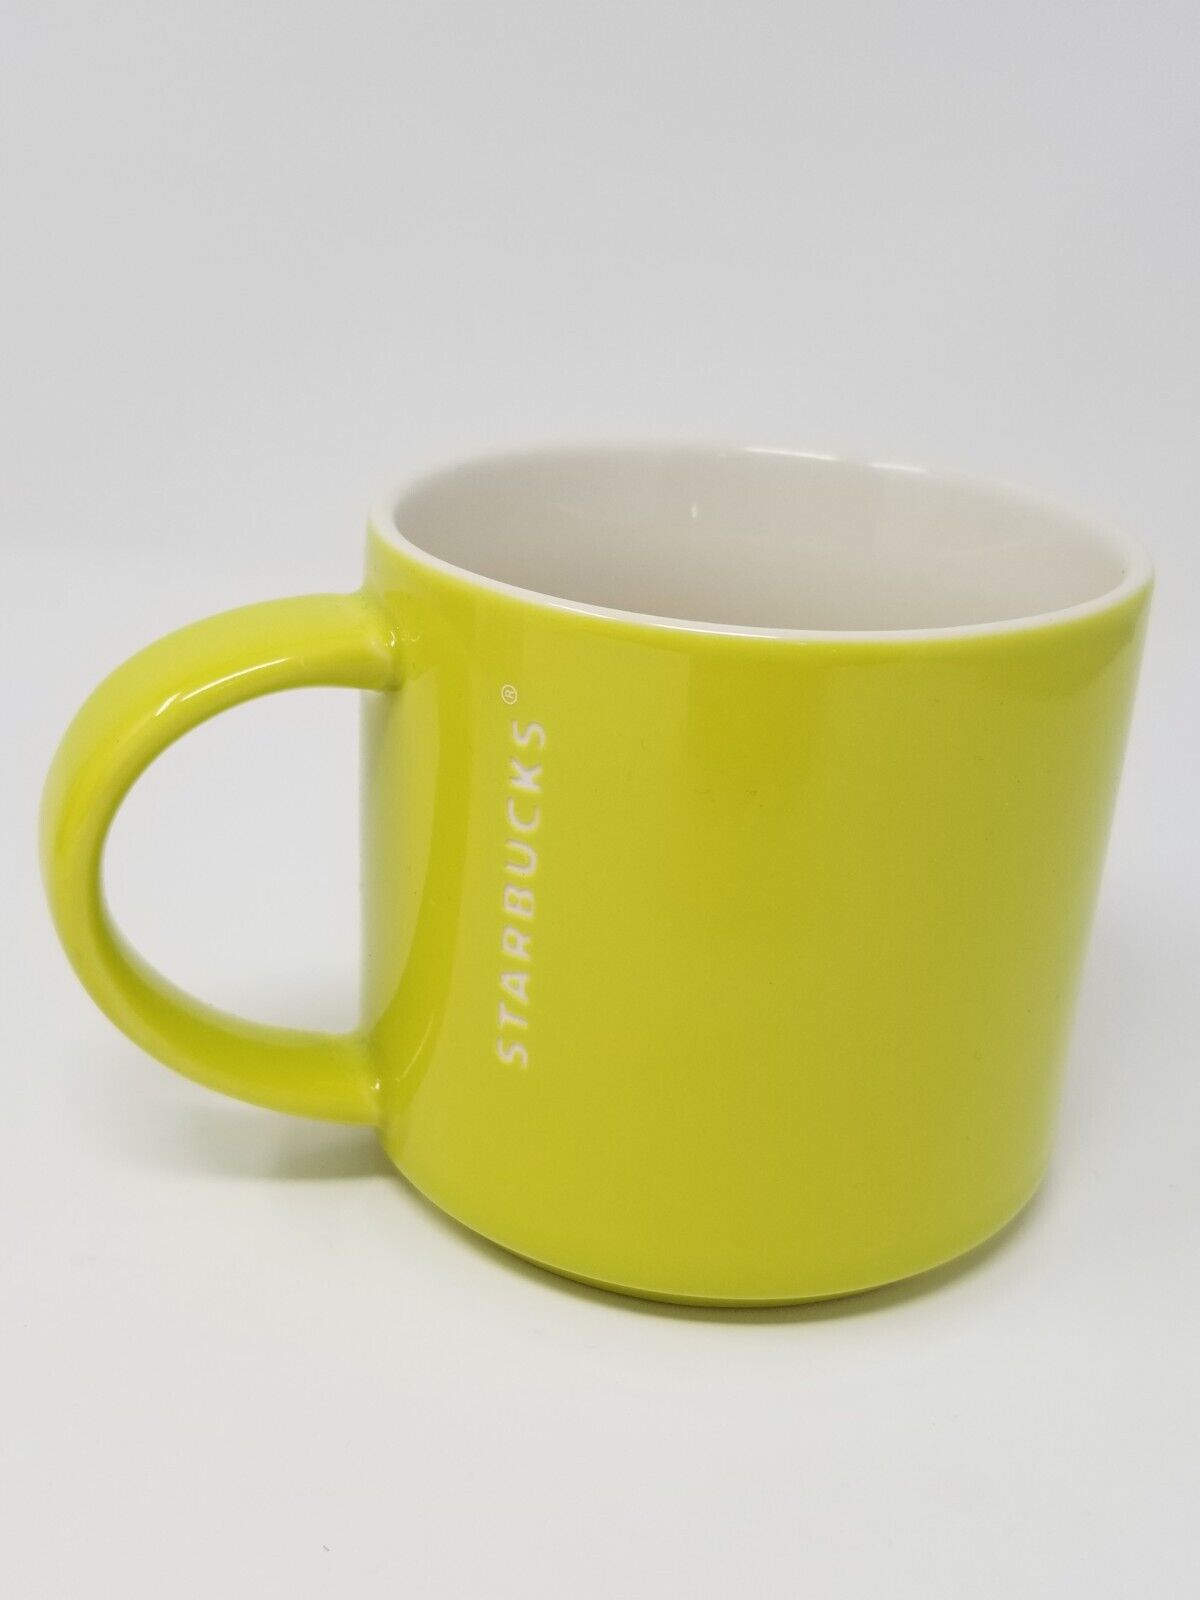 Starbucks 2012 Lime Green With White Interior Coffee Mug Tea Cup Handle 14 oz